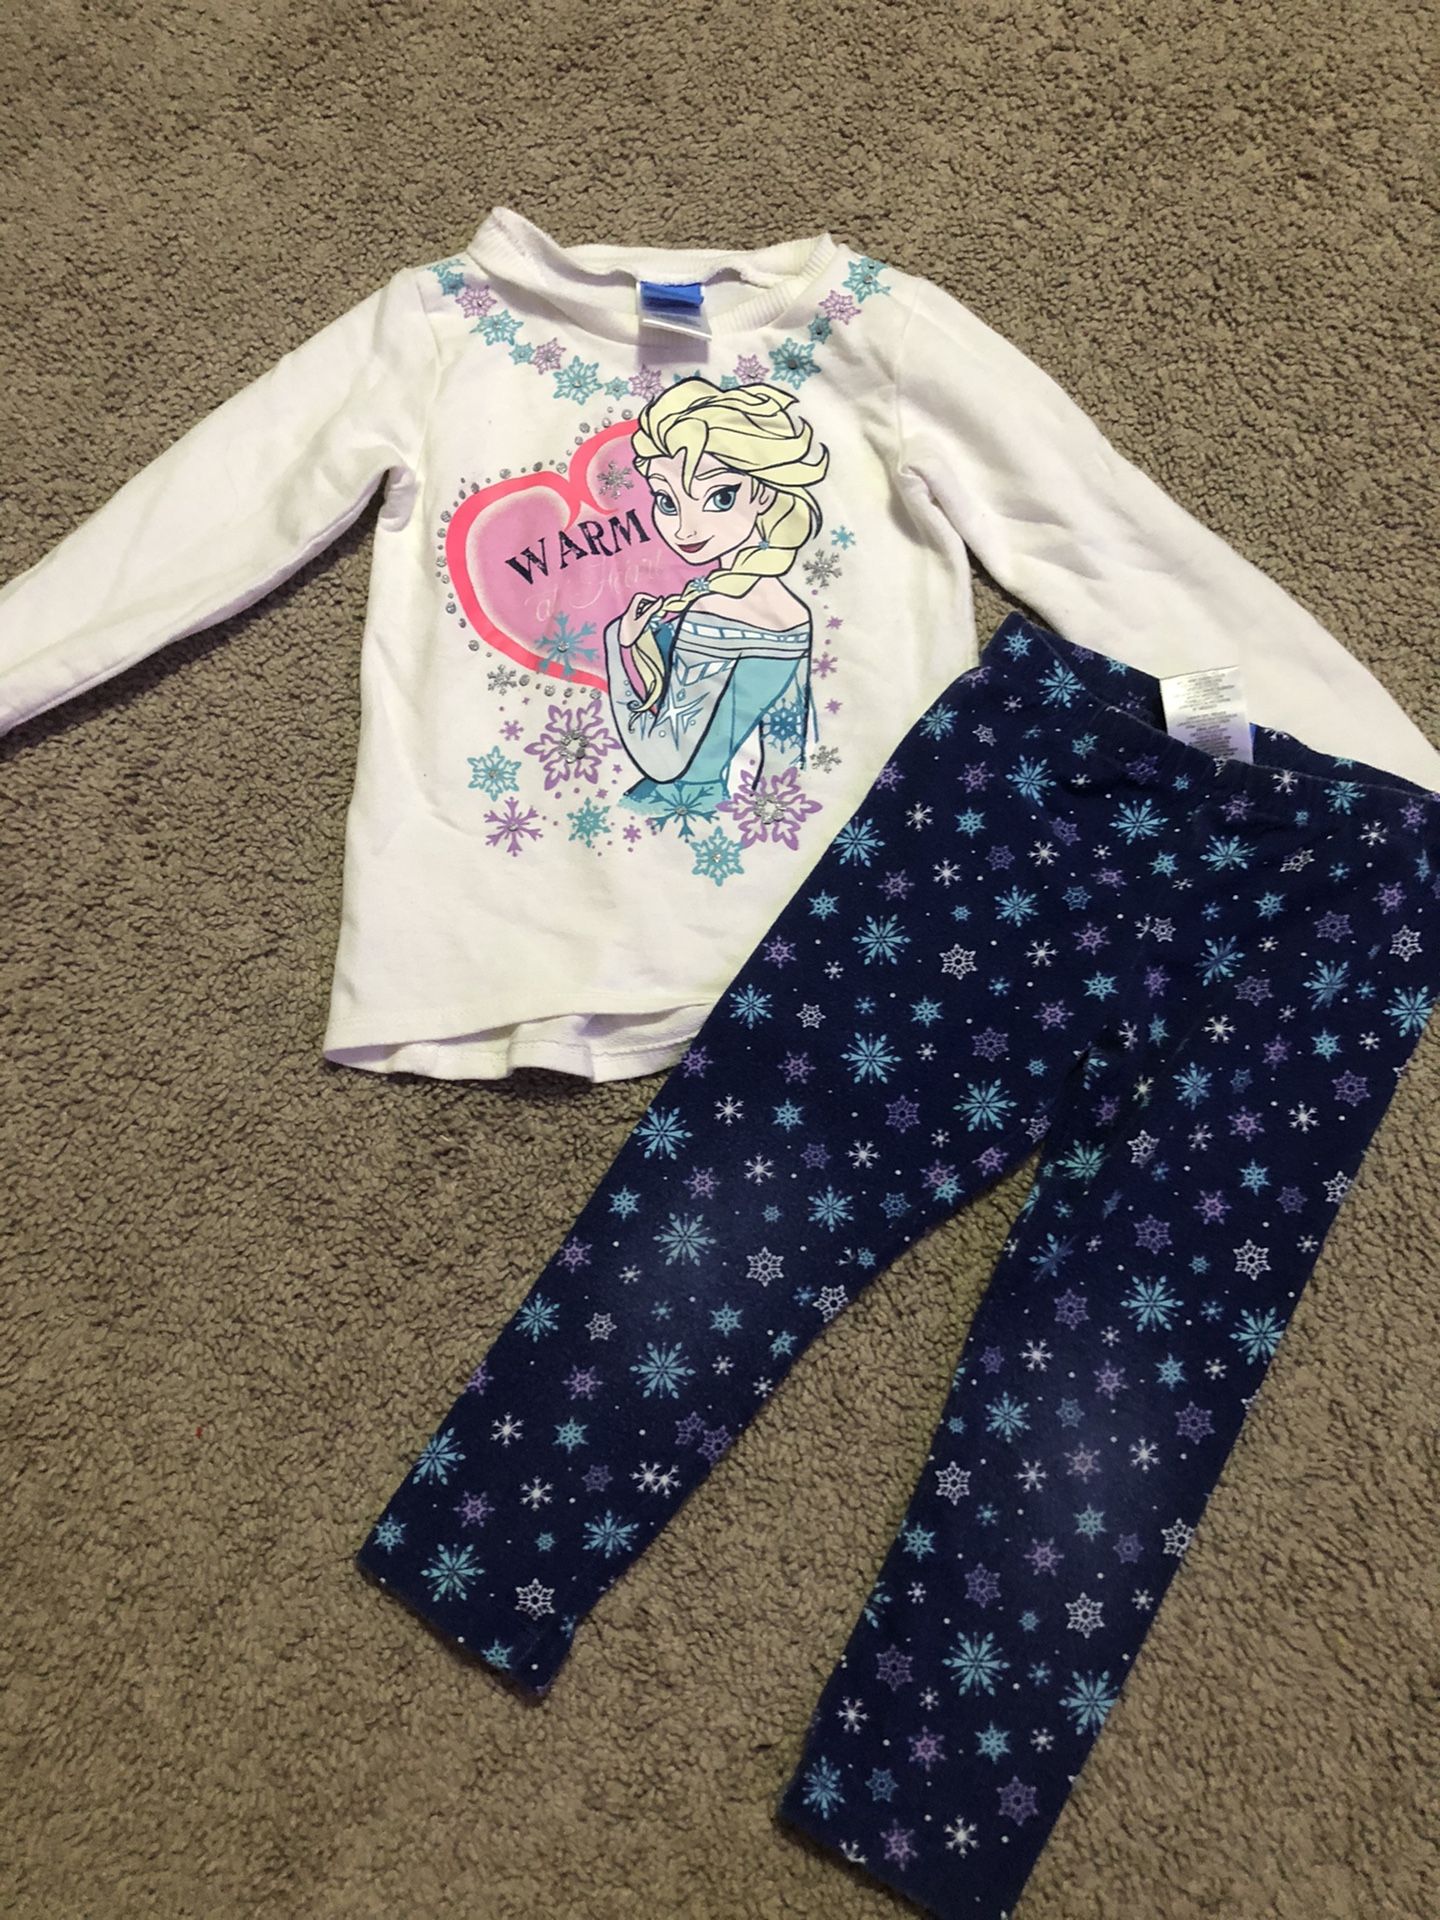 Disney Elsa Long Sleeve Outfit Sz 4 $5